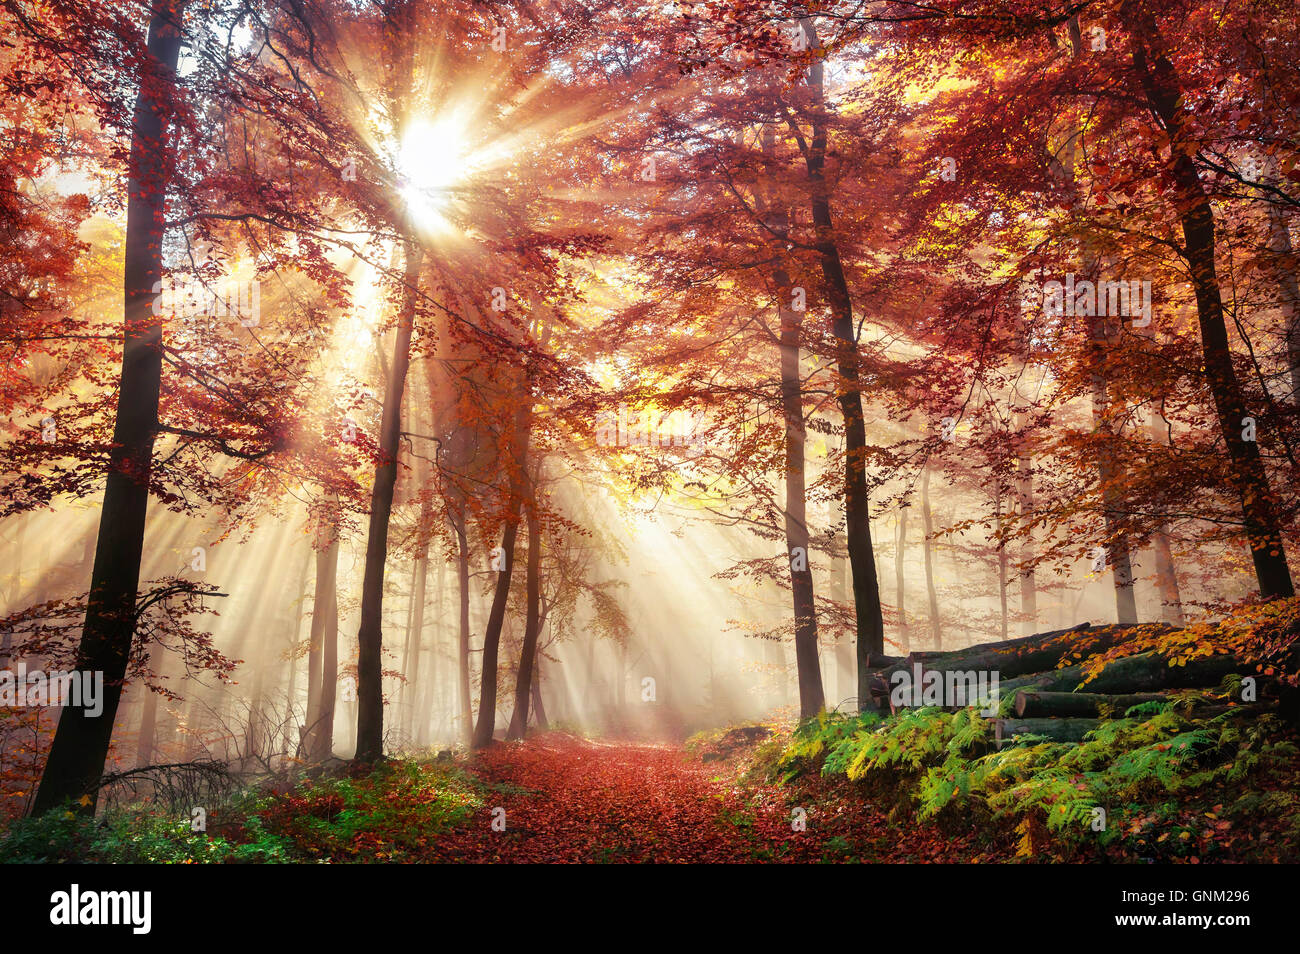 Rayons de soleil éclatant dans une forêt brumeuse avec des couleurs rouge et or à l'automne Banque D'Images